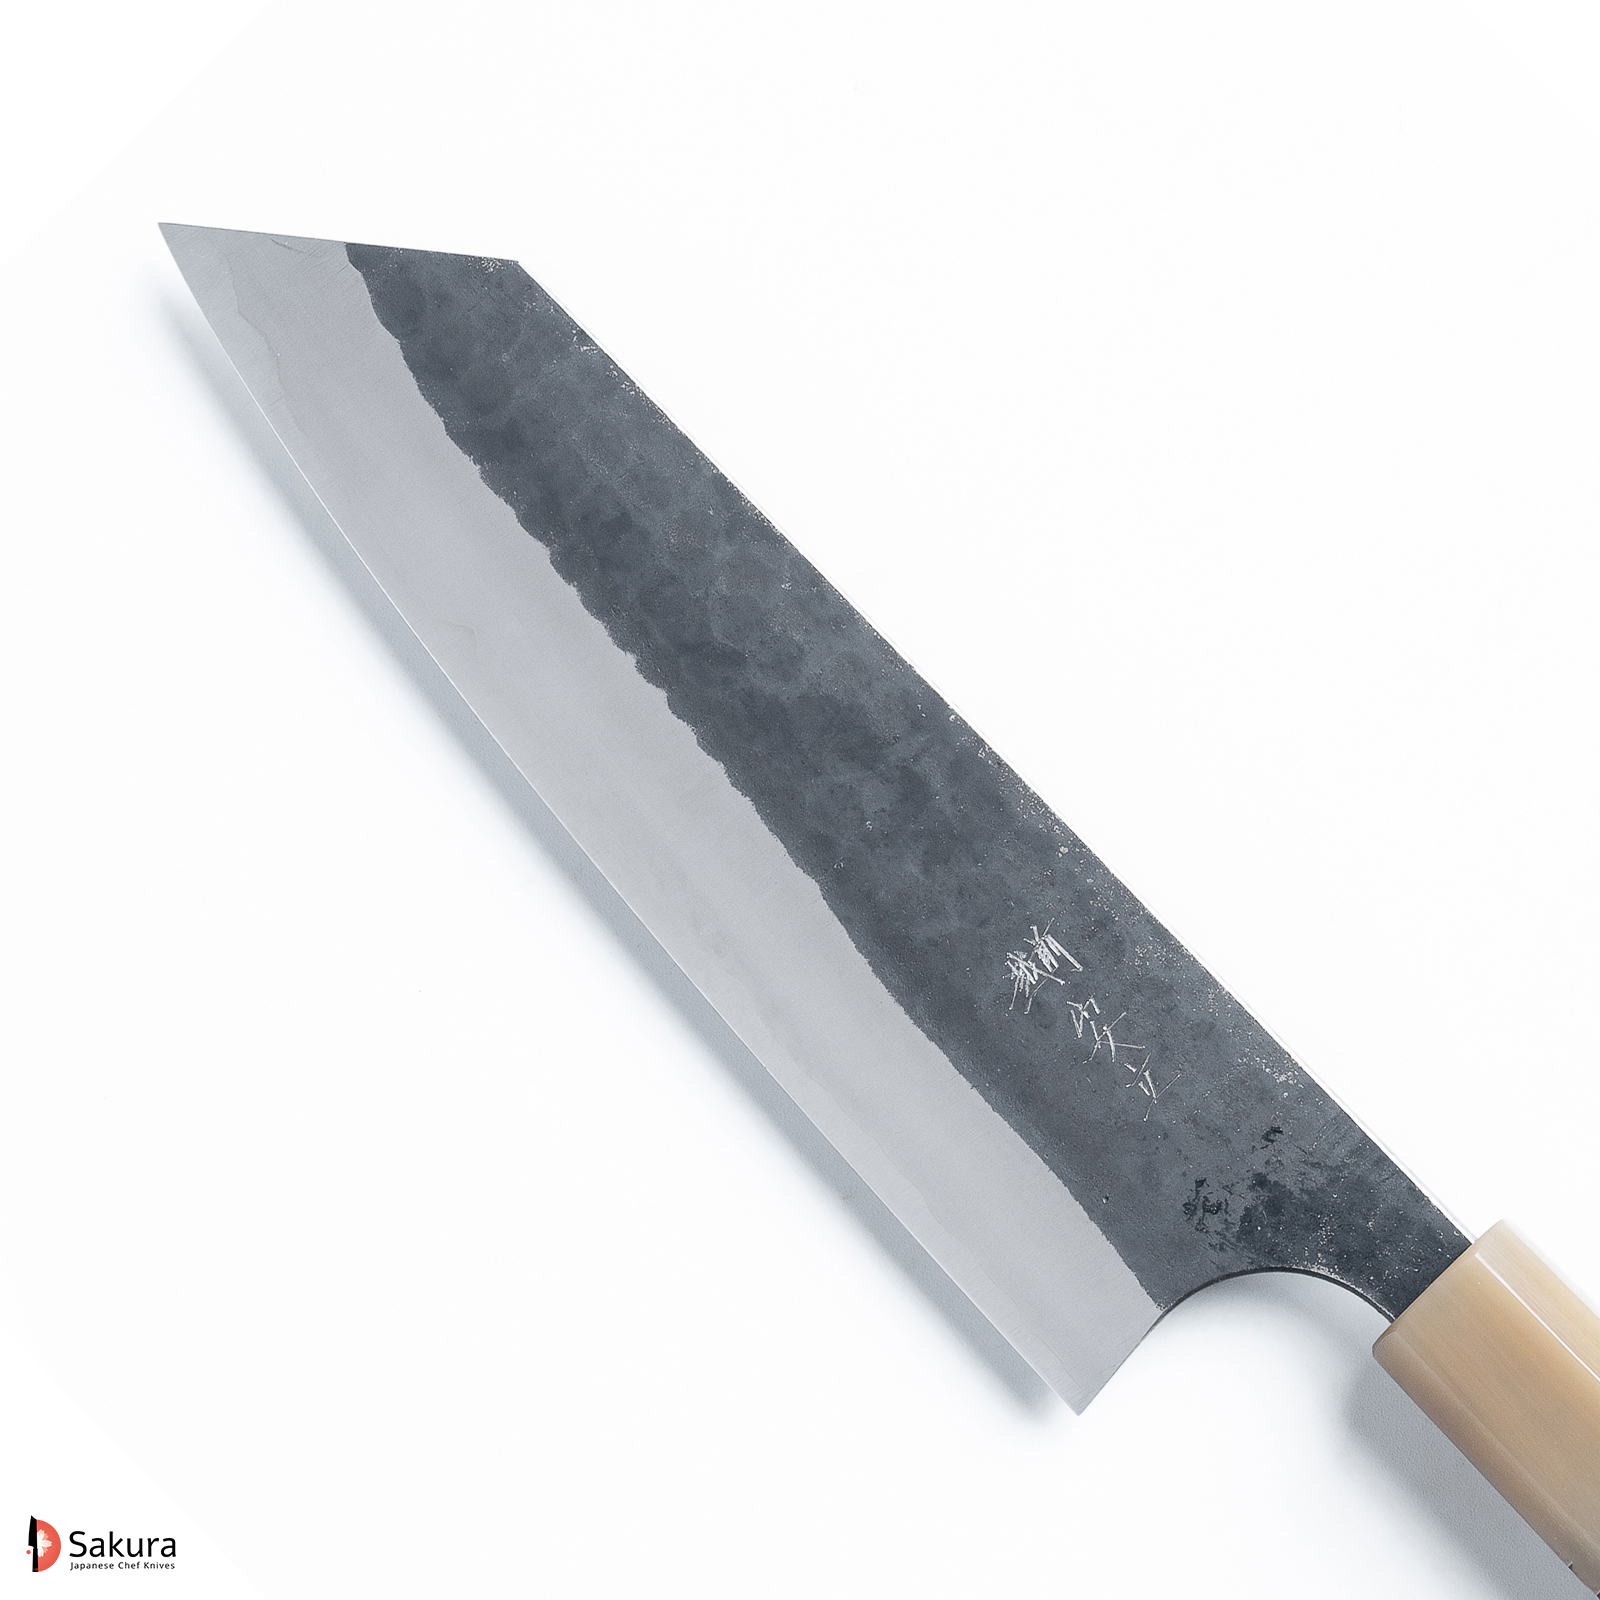 סכין רב-תכליתית בּוּנְקָה 170מ״מ פלדת Aogami Super גימור קורואוצ׳י ריקוע פטיש אנריו המונו יפן מק״ט SKANRYBUNK1702323